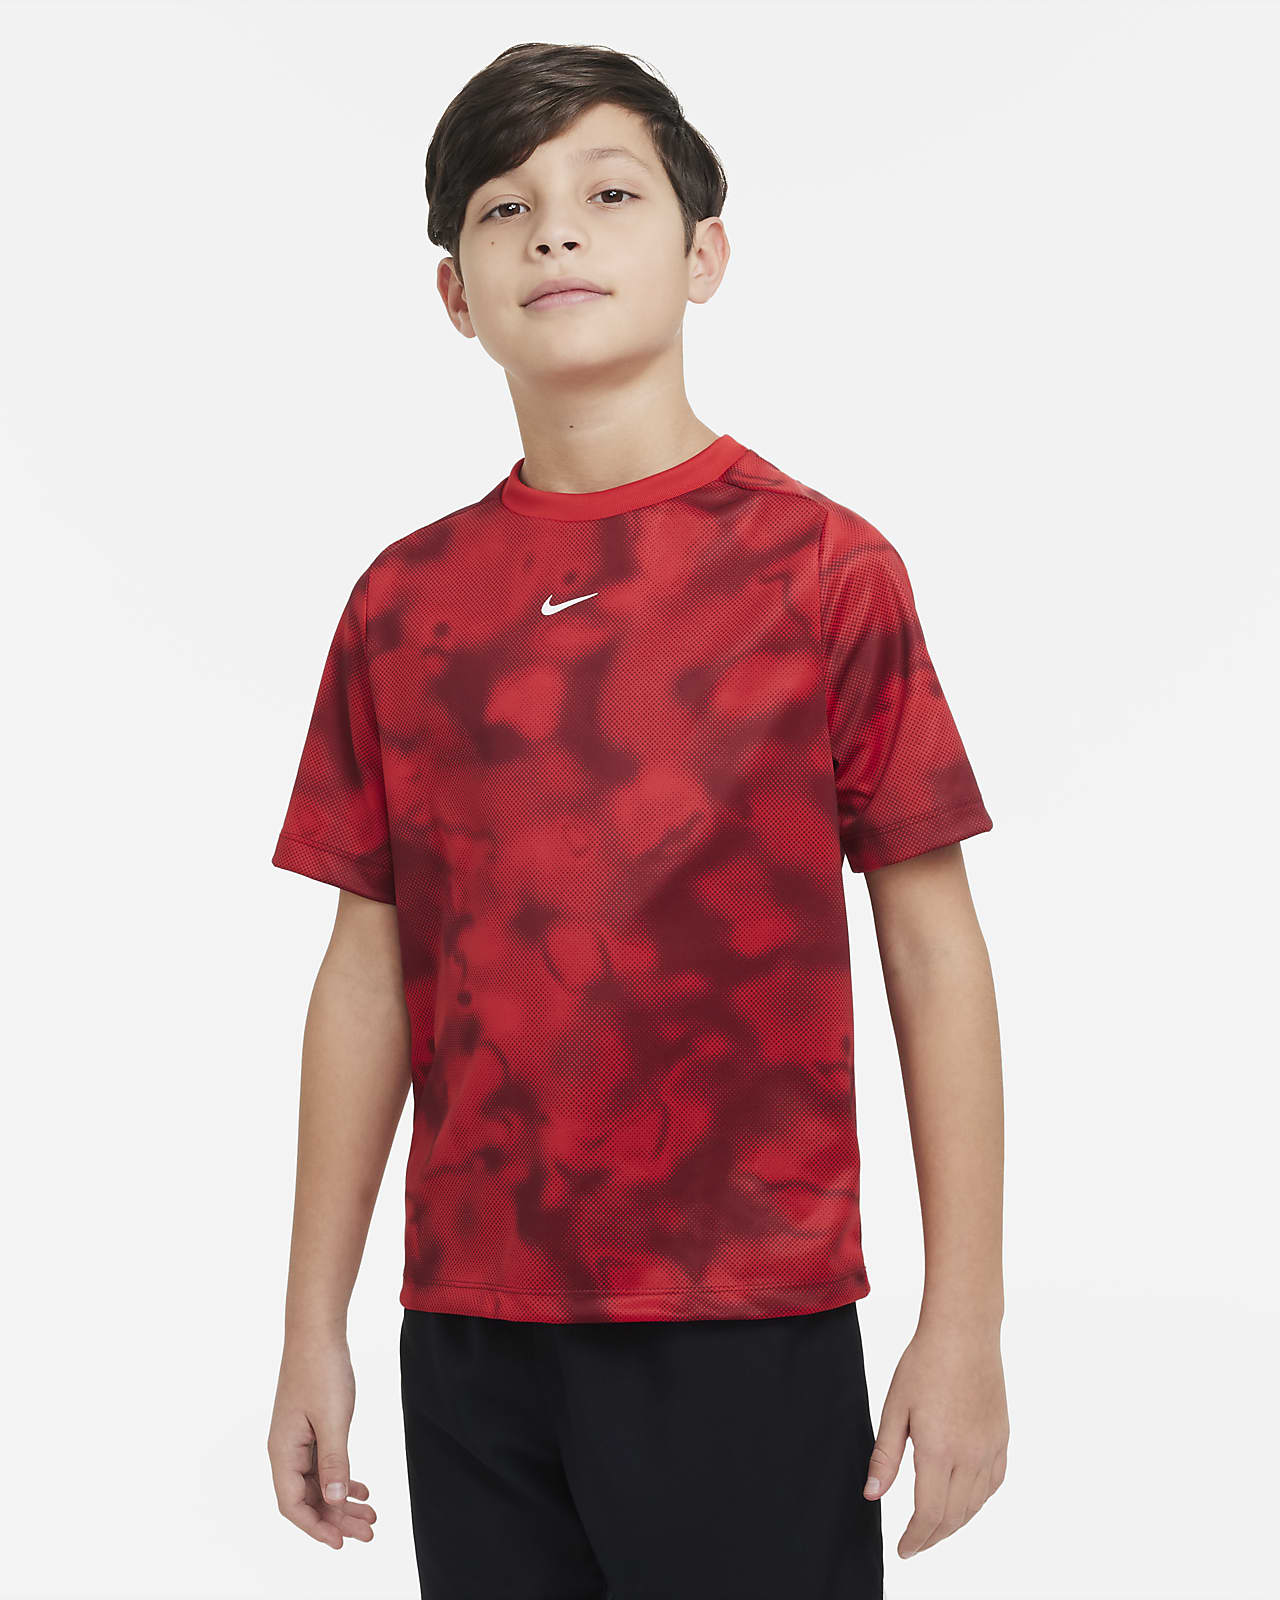 Hacer las tareas domésticas Motivación aventuras Nike Dri-FIT Multi+ Big Kids' (Boys') Printed Training Top. Nike.com